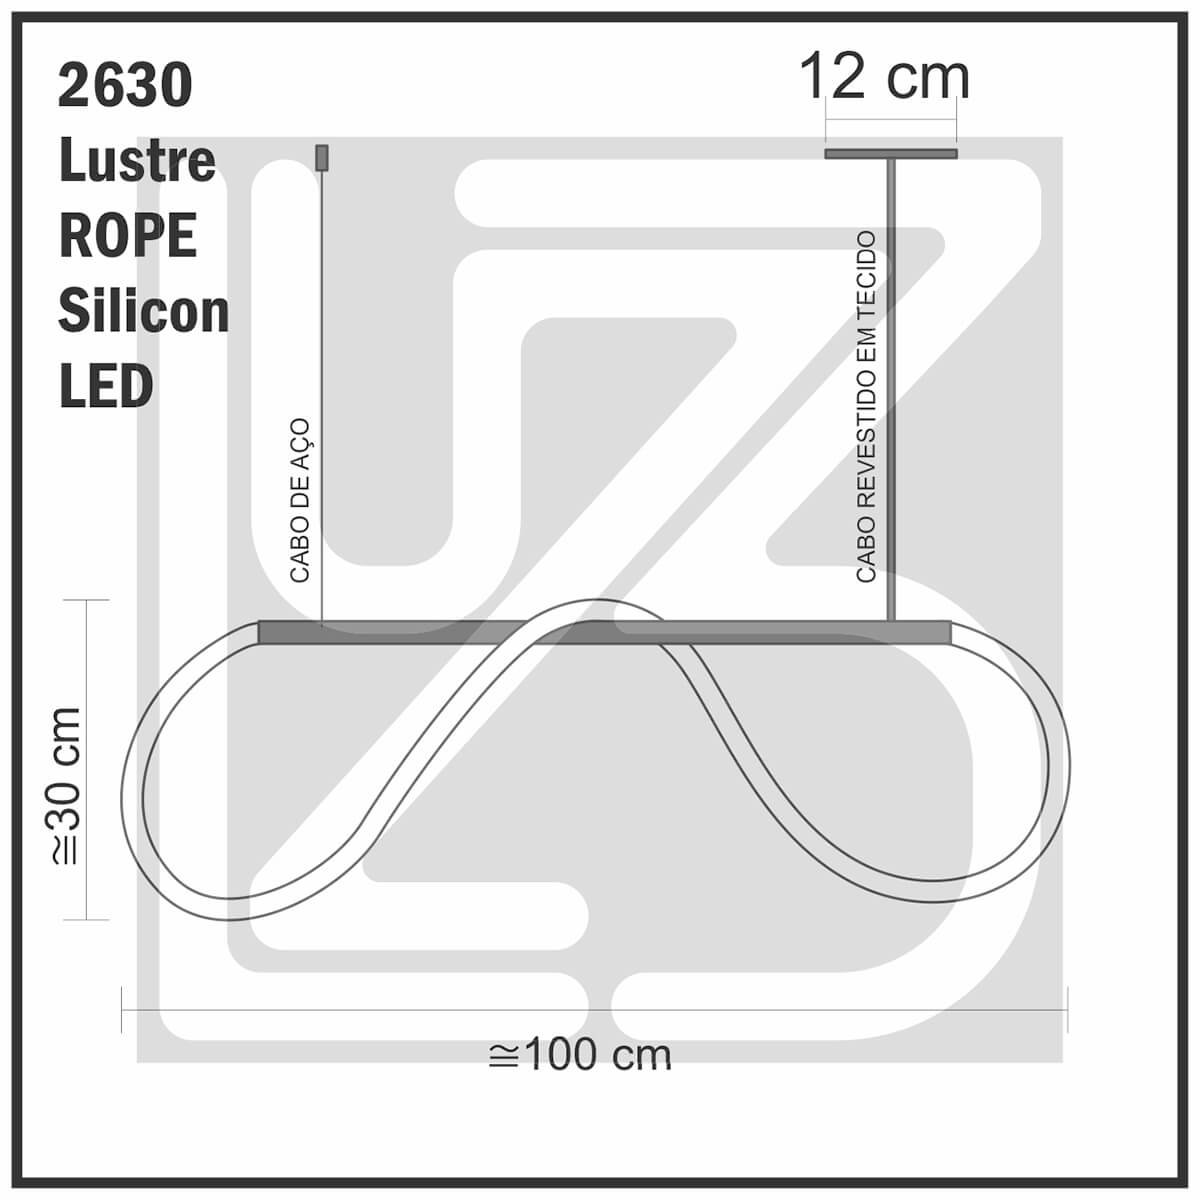 Lustre Design Moderno Rope 38w - Silicon LED 3000K - PRETO - 6